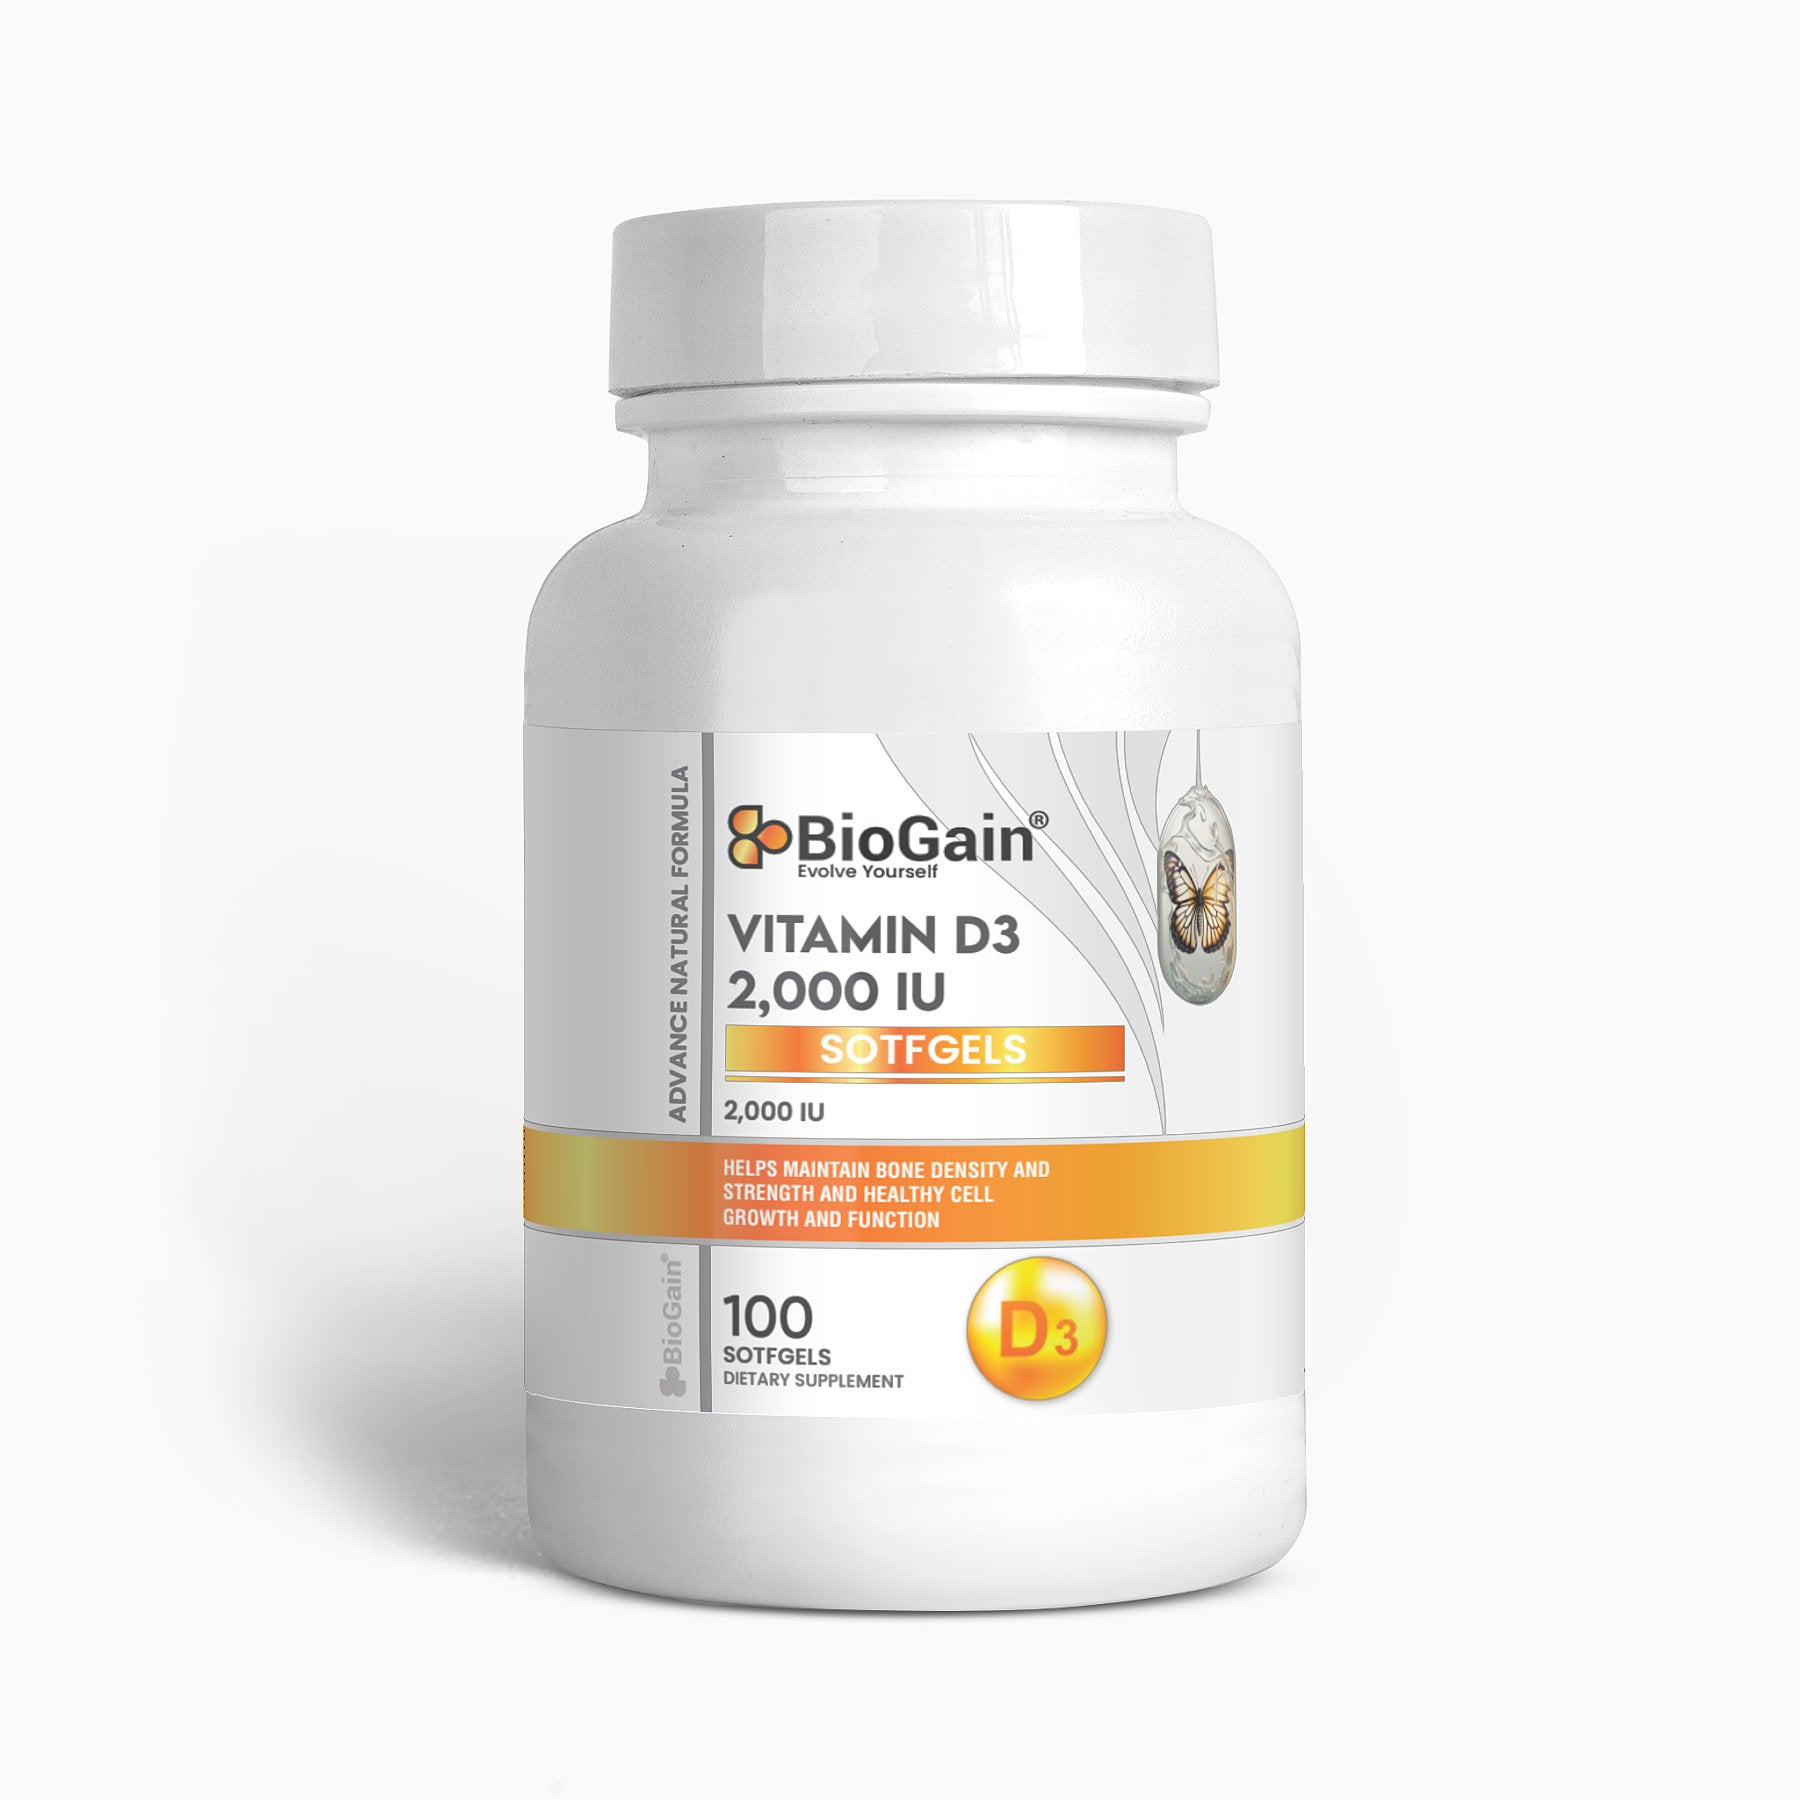 BioGain® Vitamin D3 2,000 IU